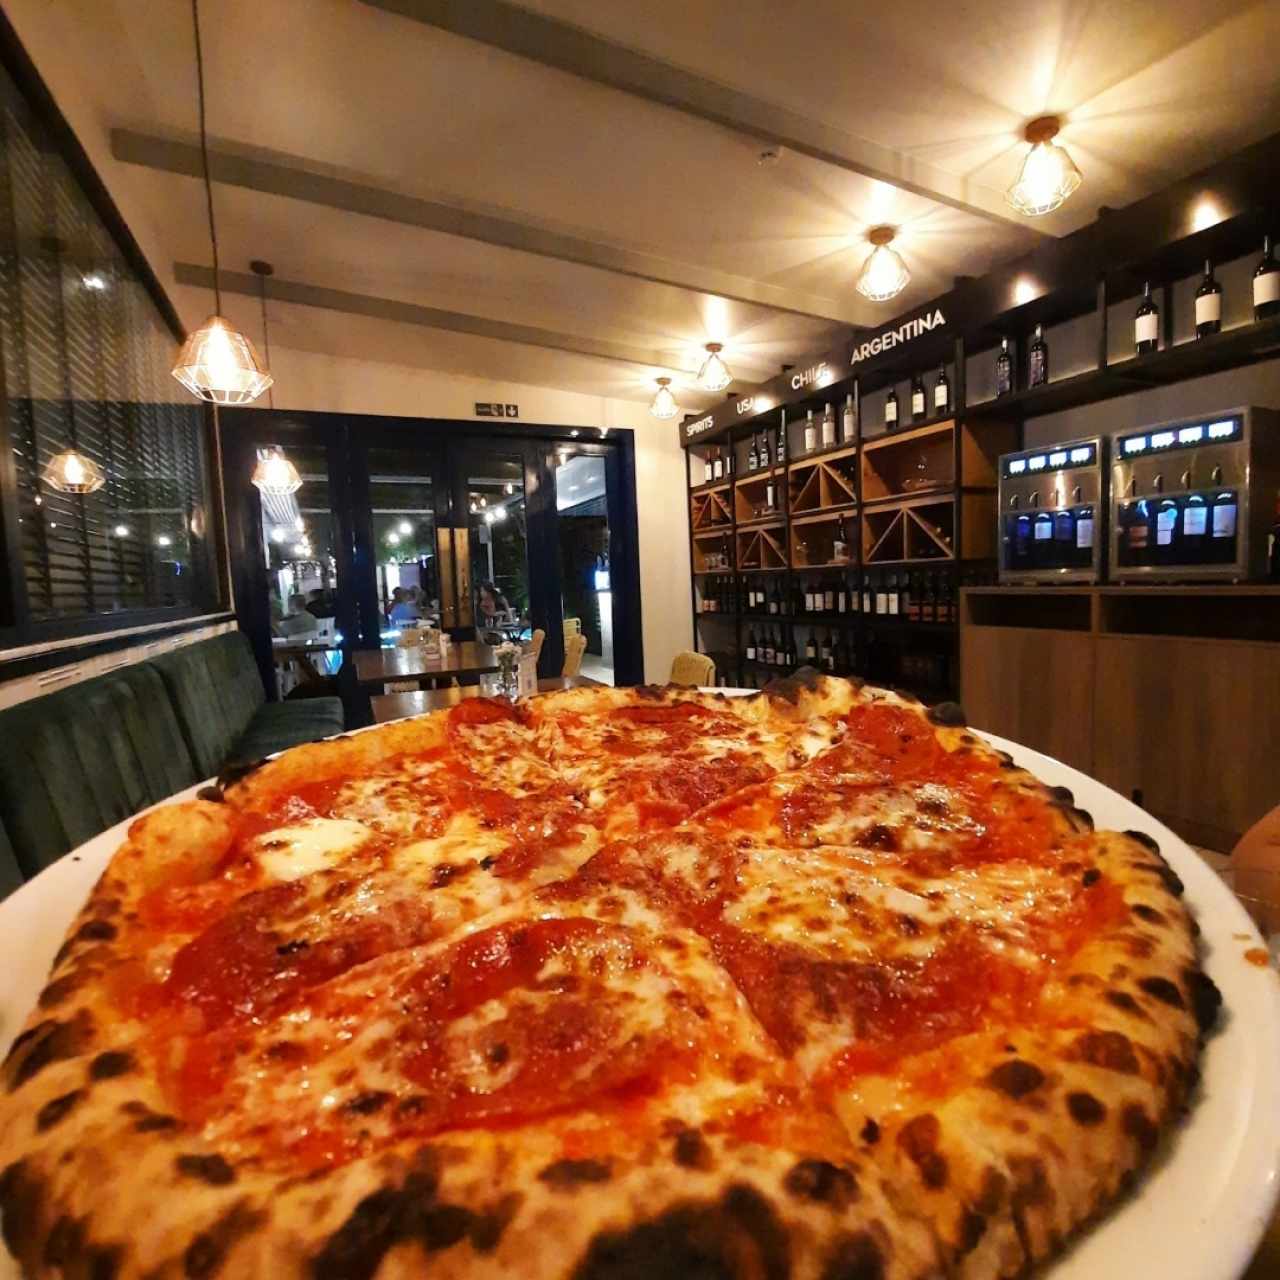 Pizzas Napoletanas - Pepperoni